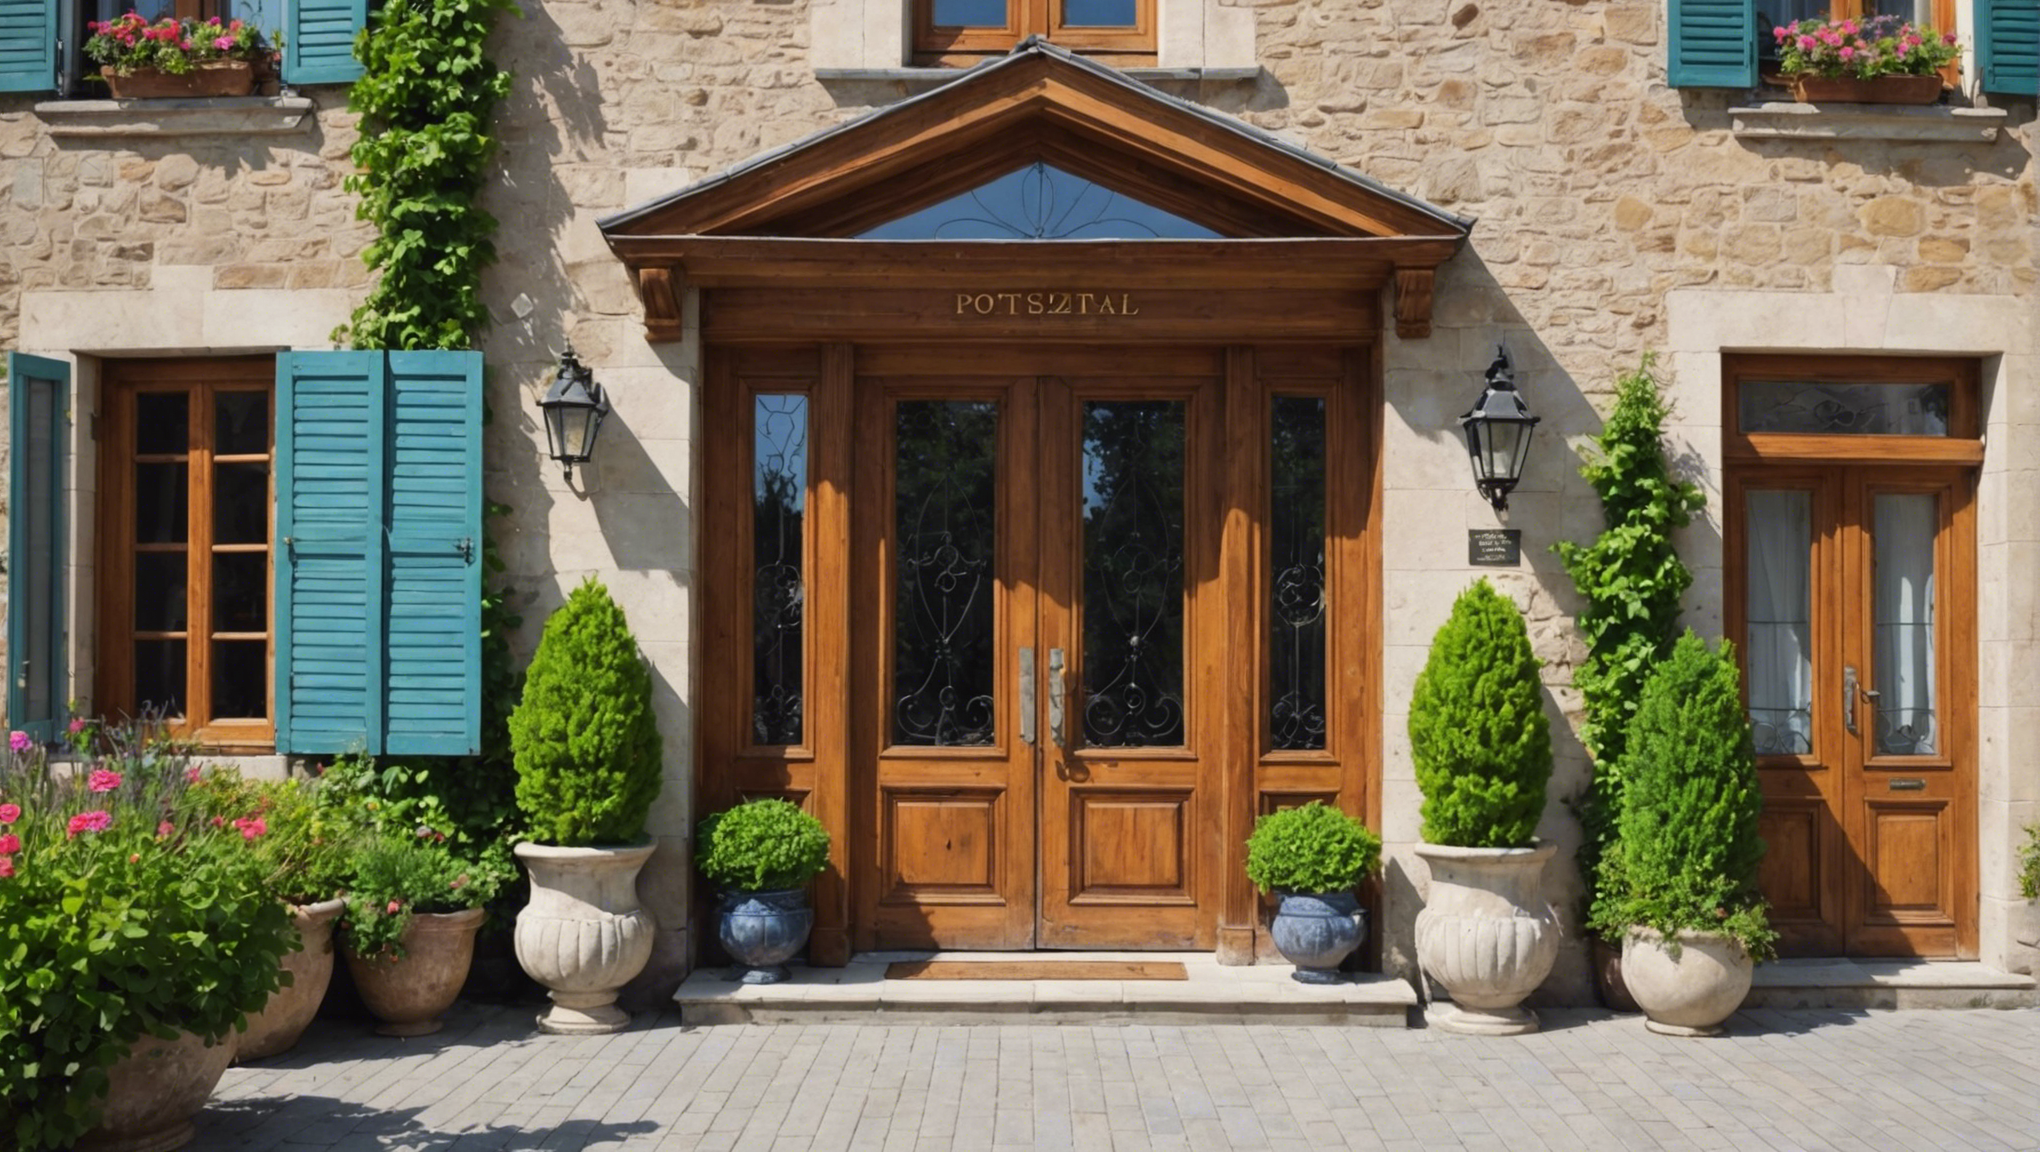 découvrez nos conseils pour sélectionner la meilleure entrée pour le portail de votre maison et profiter d'un accès sécurisé et esthétique.